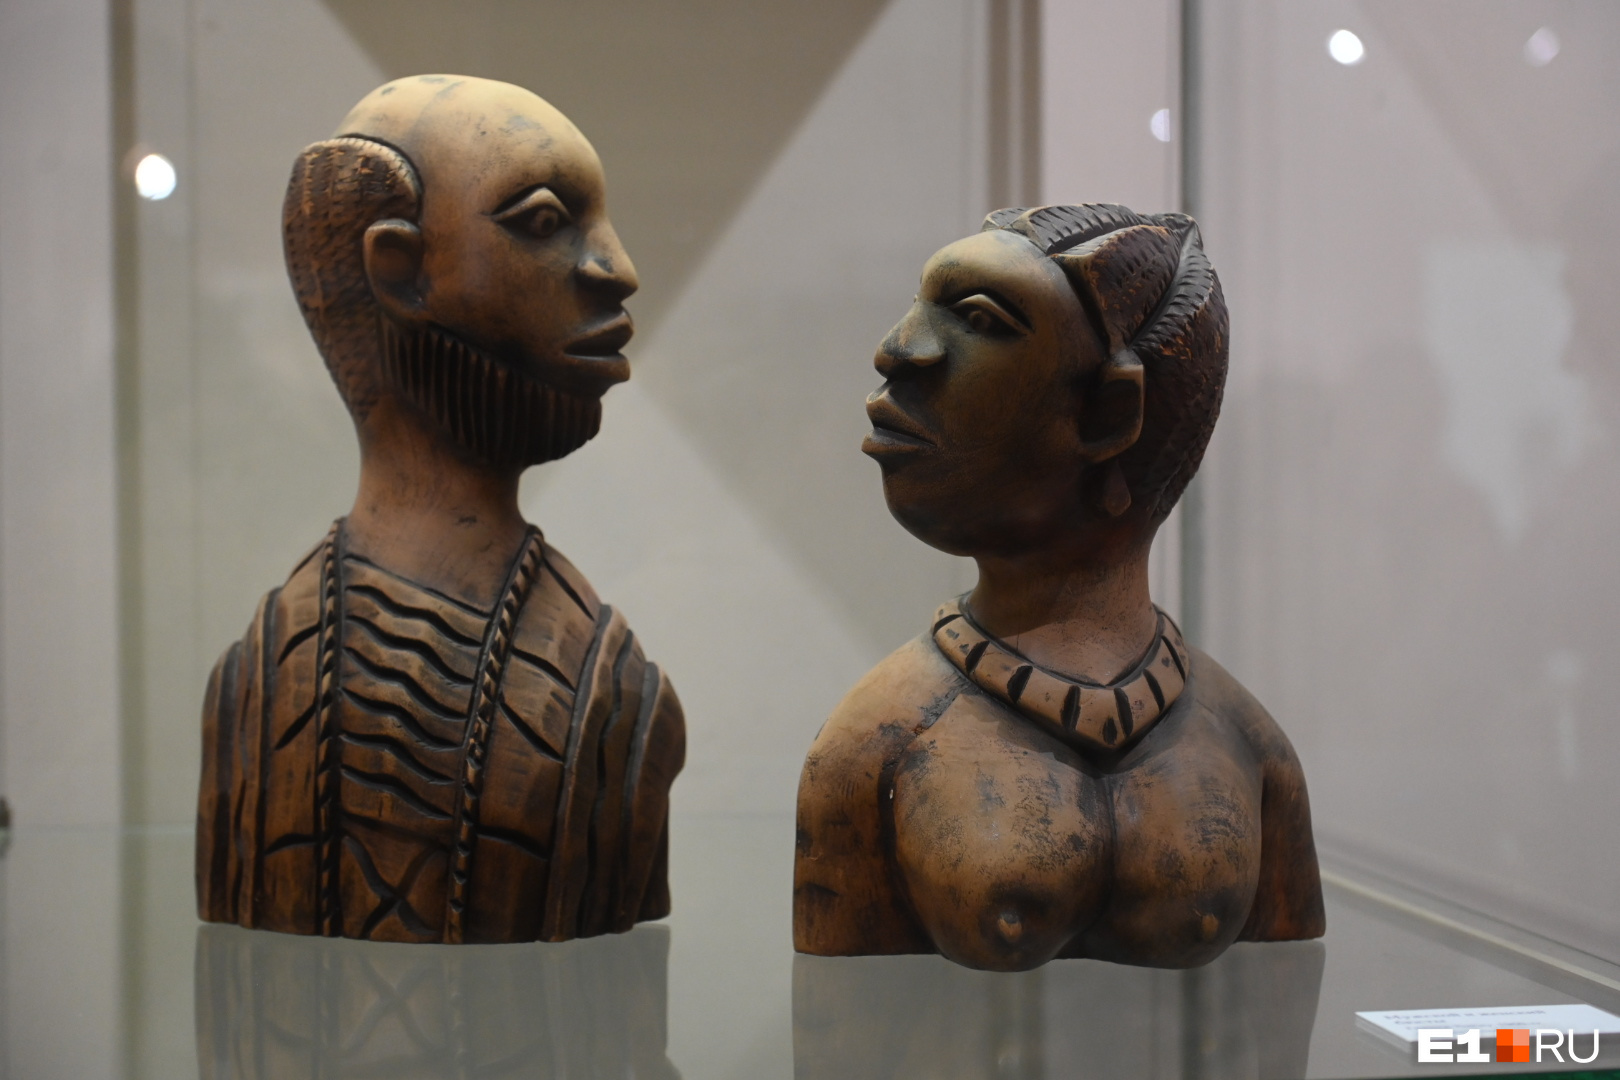 В Екатеринбурге показали старинные африканские маски. Некоторым из них 500 лет